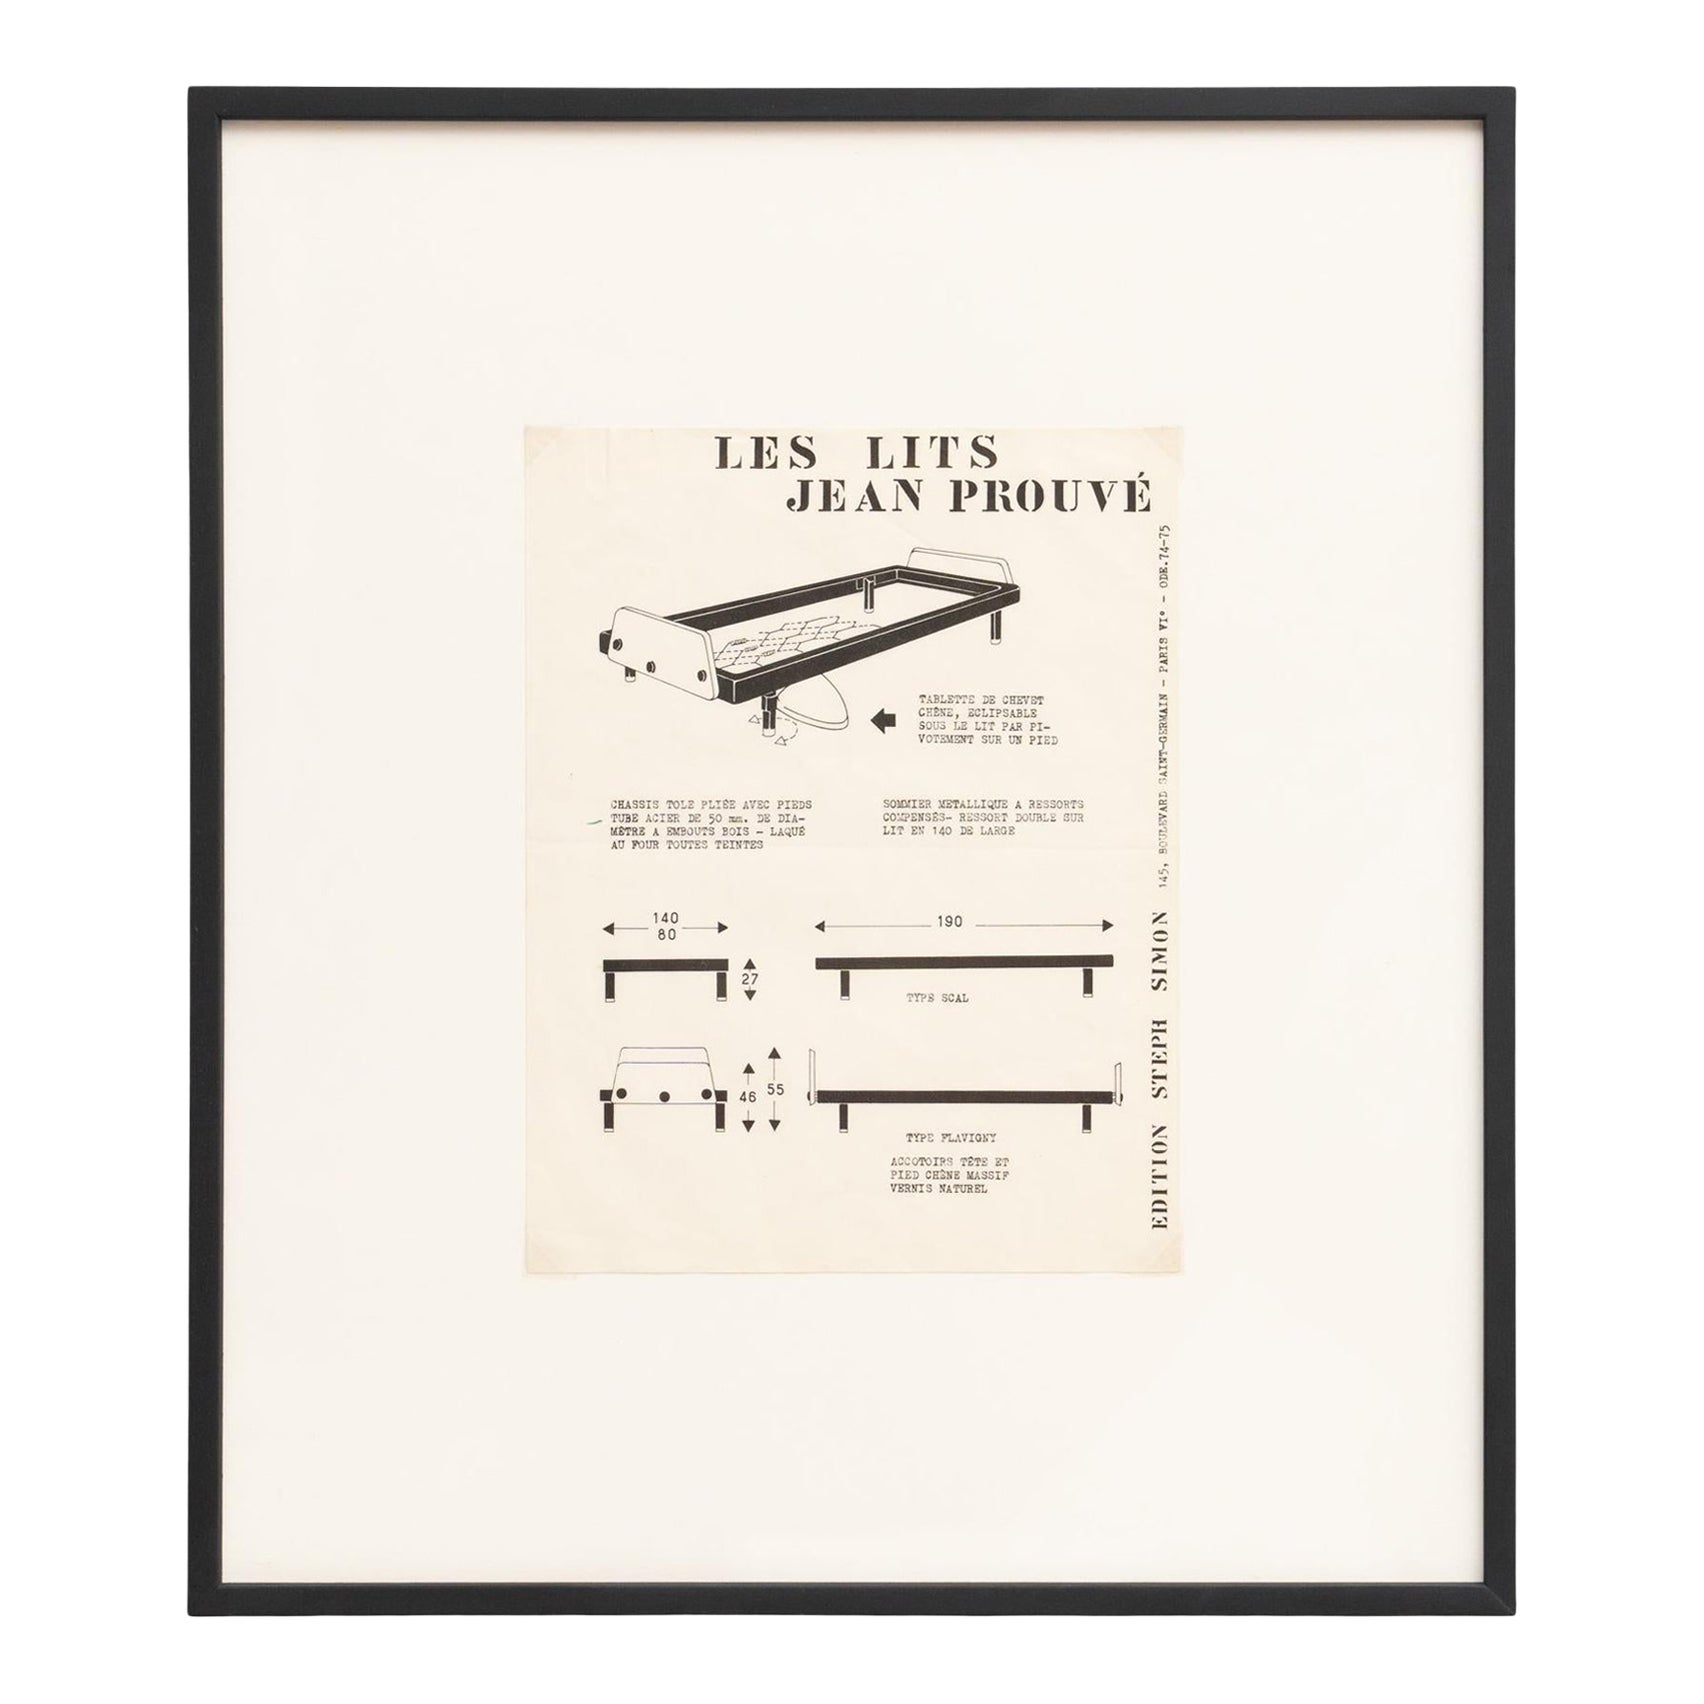 Rare "Les Lits" Jean Prouvé Booklet Framed For Sale